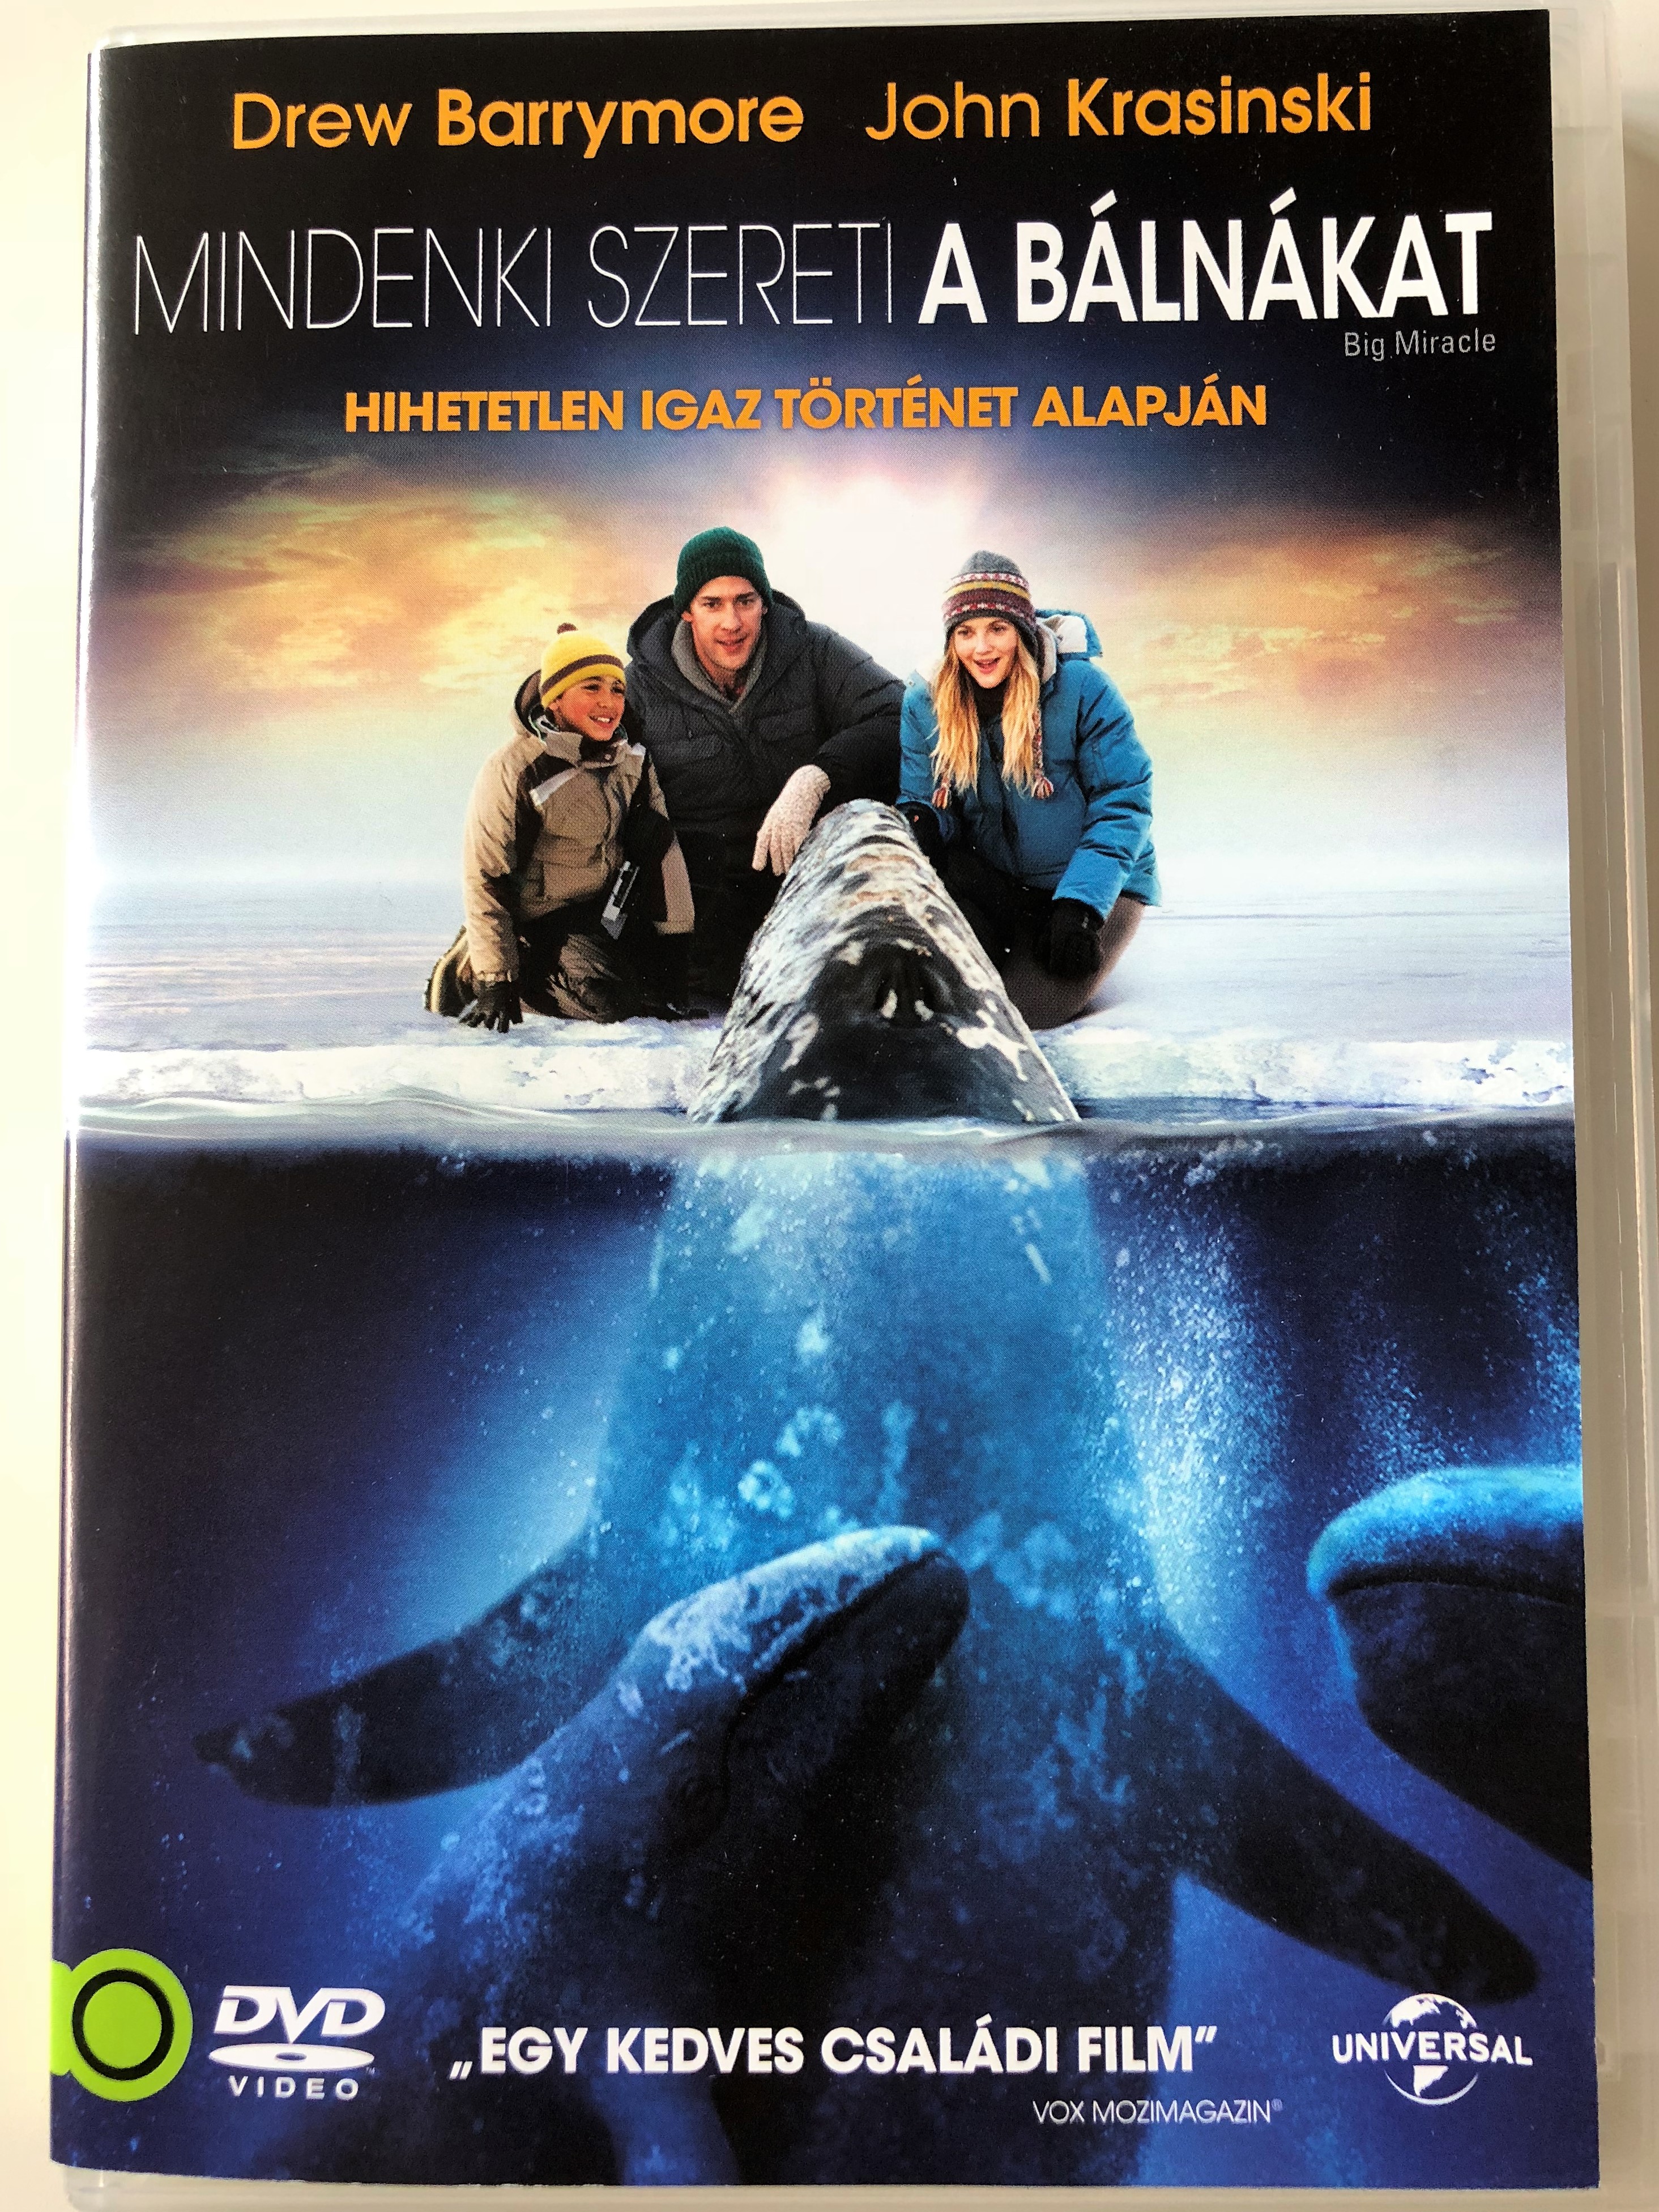 big-miracle-dvd-2012-mindenki-szereti-a-b-ln-kat-directed-by-ken-kwapis-starring-drew-barrymore-john-krasinski-1-.jpg